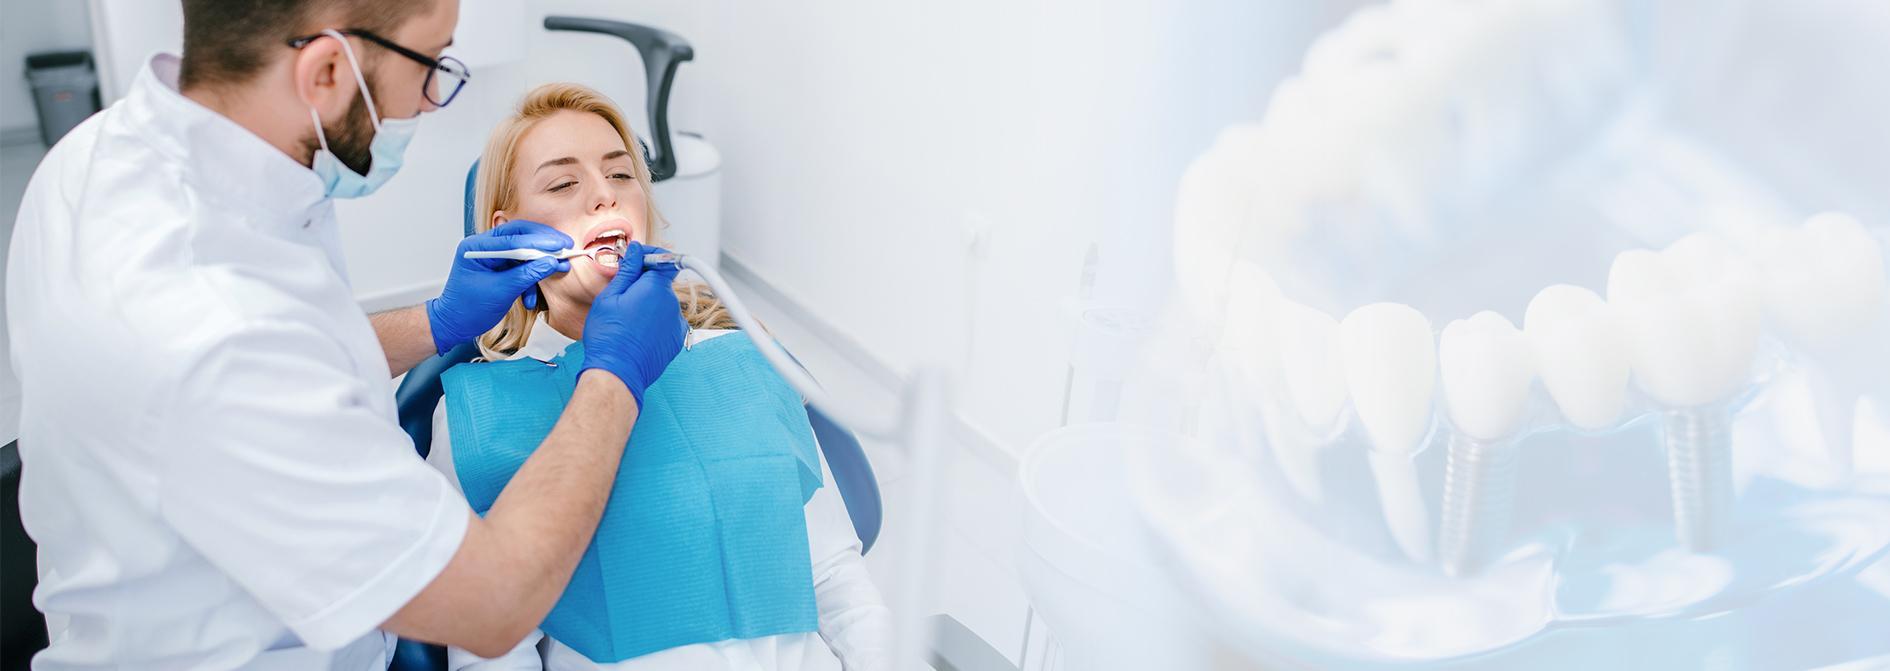 Dentysta oglądający stan uzębienia